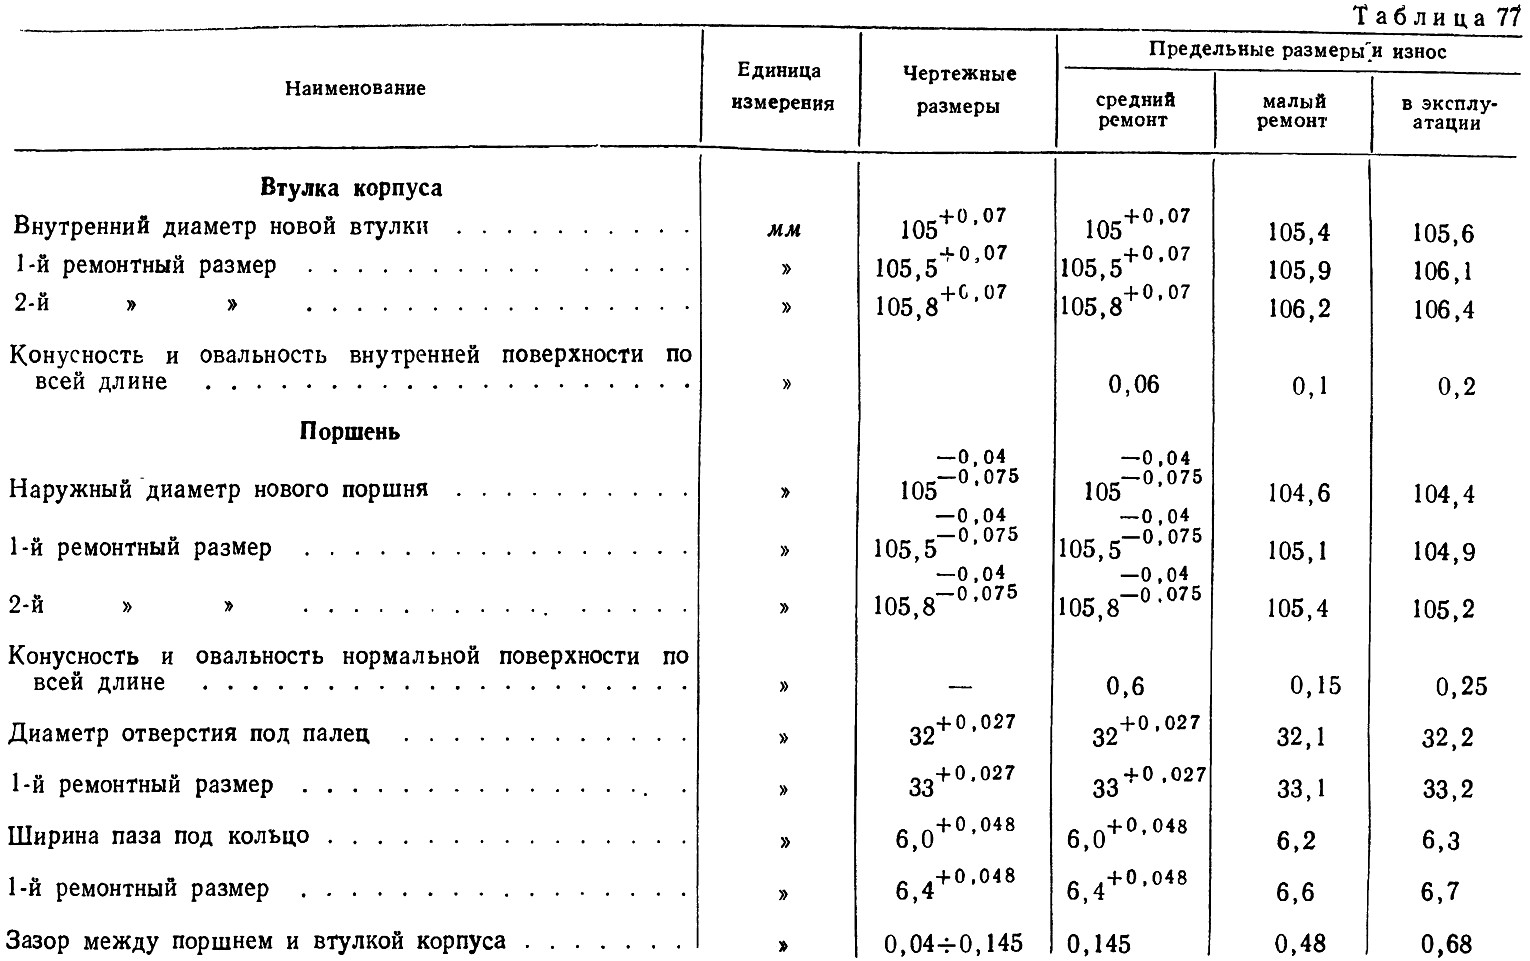 Таблица 77 - Нормы и допуски на ремонт и эксплуатацию компрессоров трамваев типа Э-300